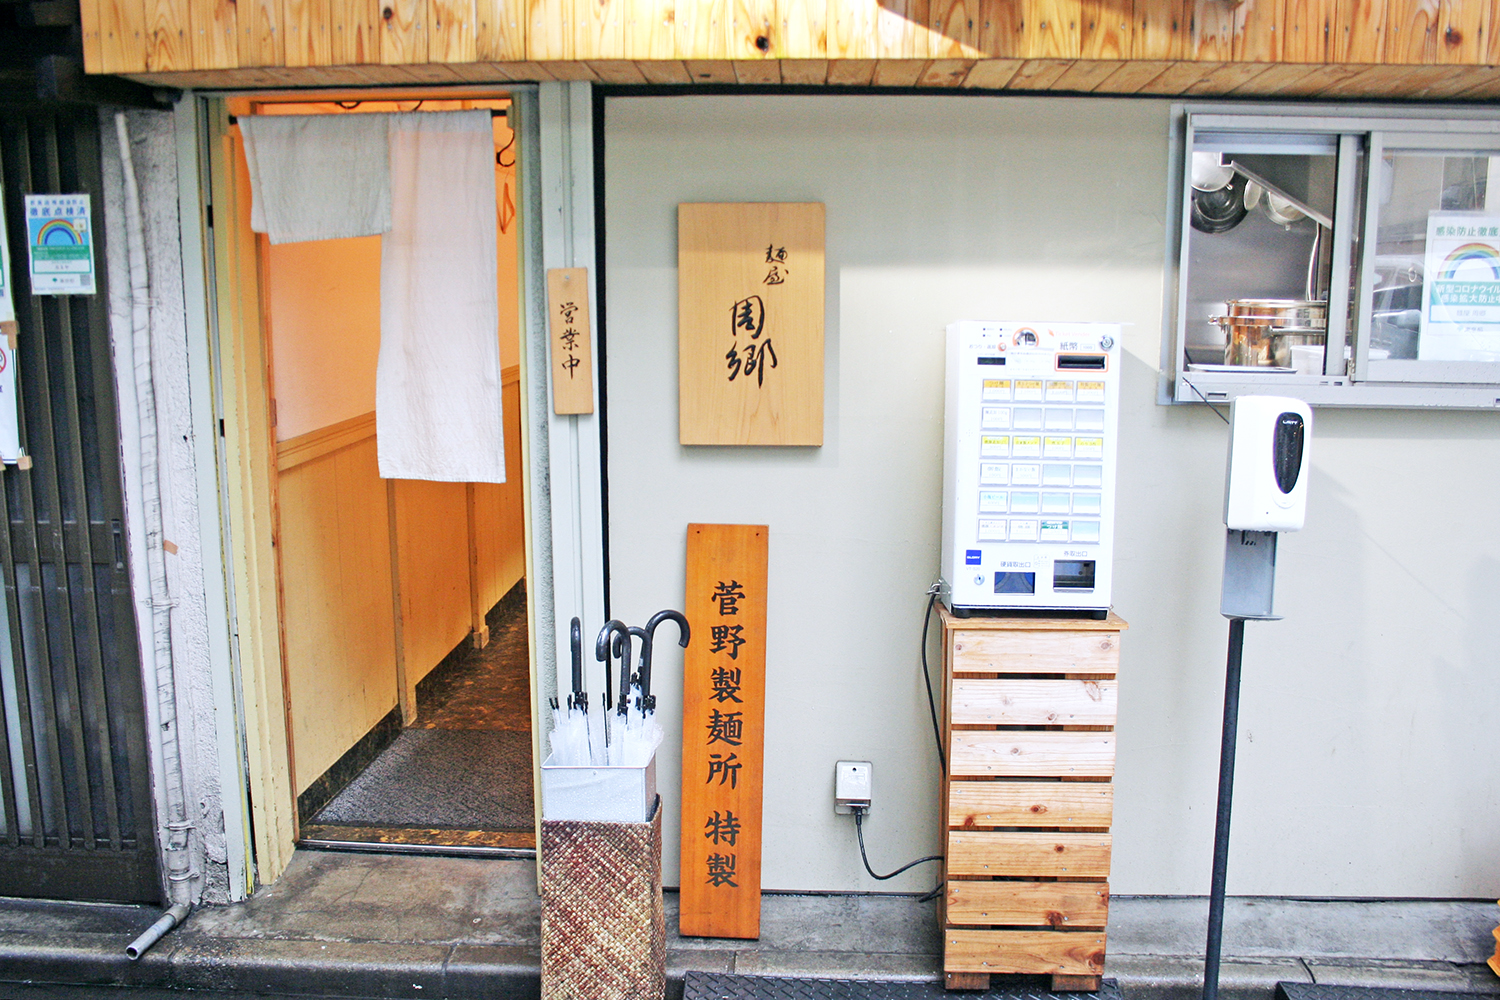 日本料理店の趣の外観。券売機の横の窓から厨房が見える。